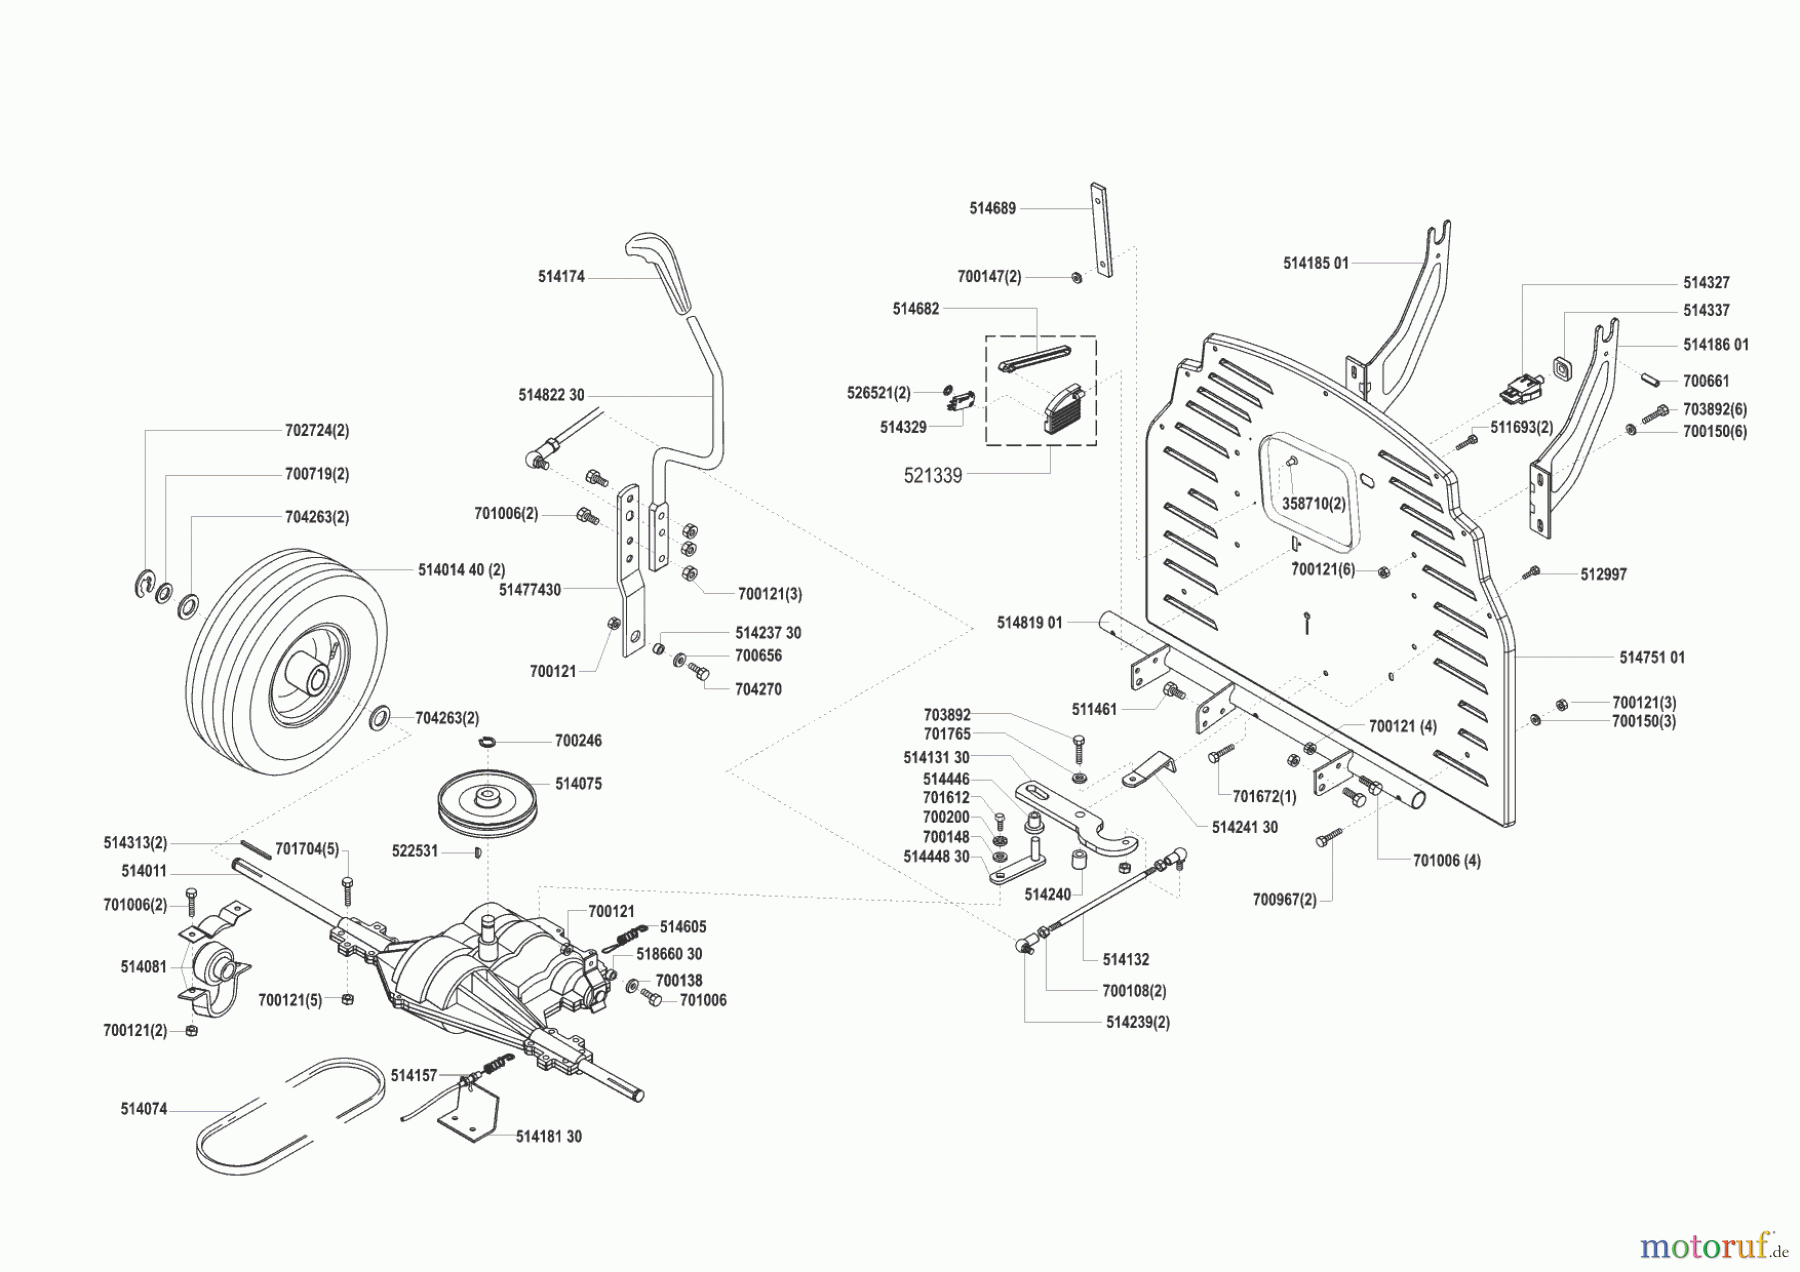  GHD Gartentechnik Rasentraktor T 10 vor 01/2001 Seite 2